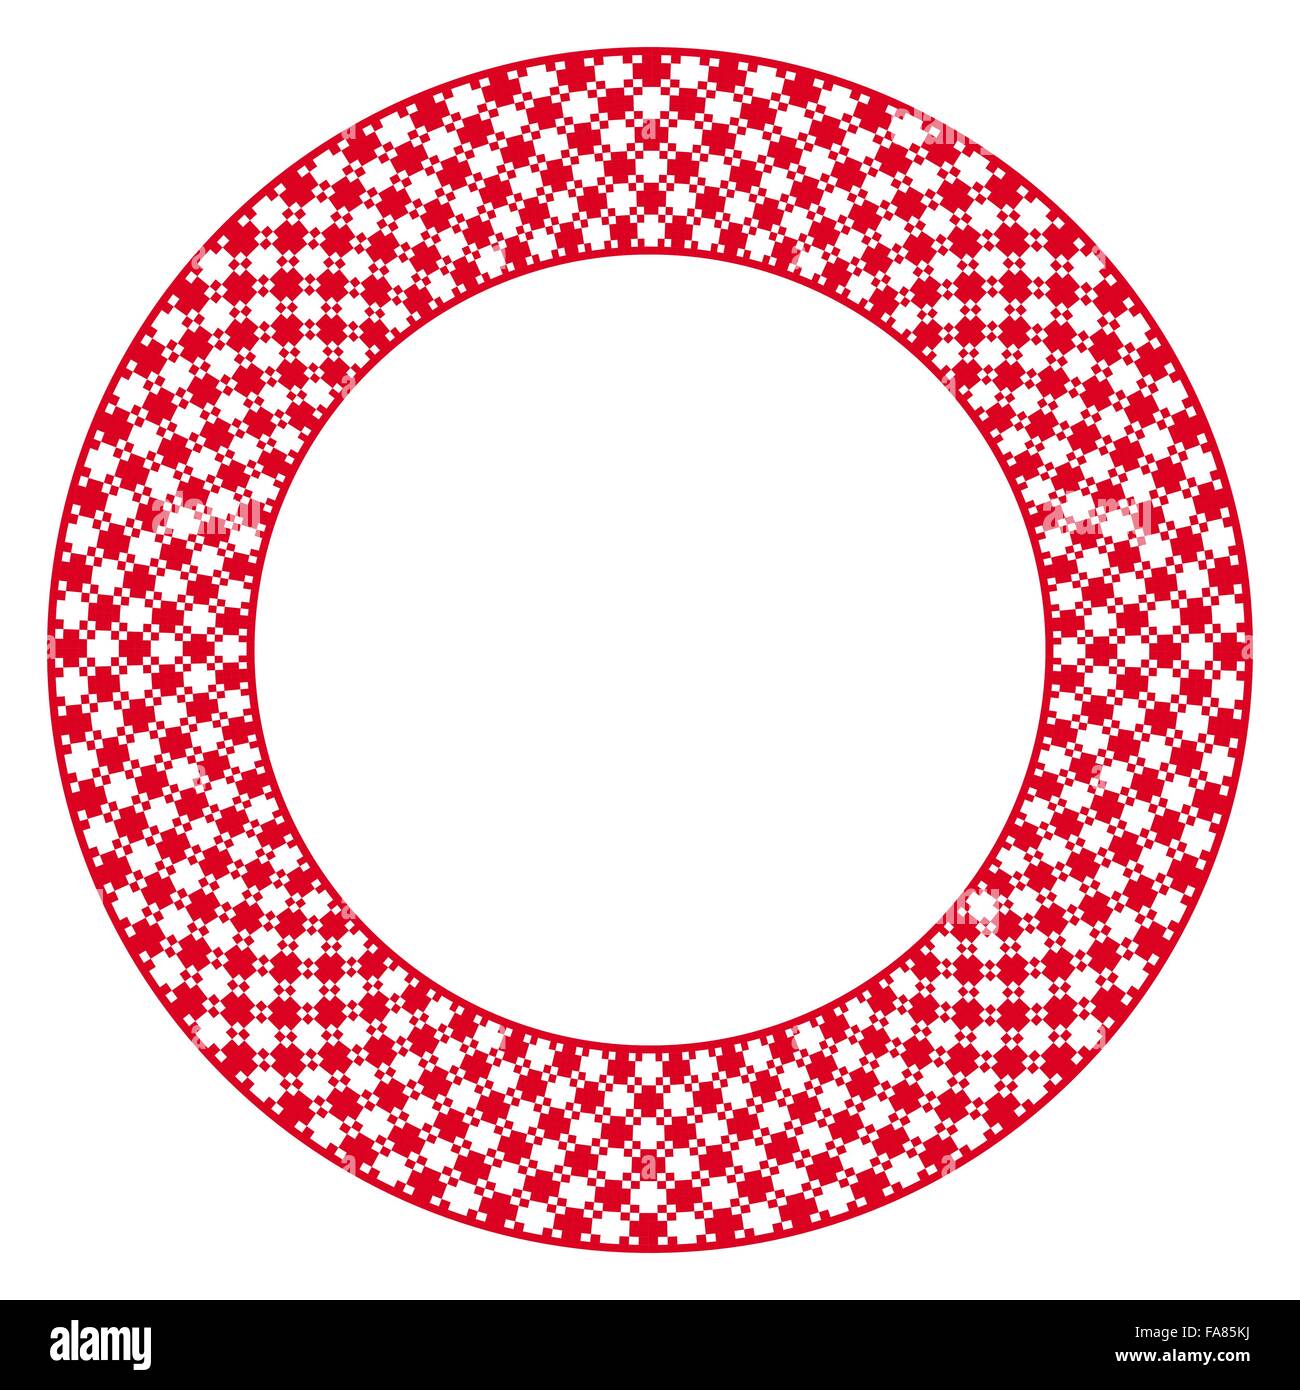 Vektor-Illustration der traditionellen slawischen Runde gestickte Muster für Ihr design Stock Vektor